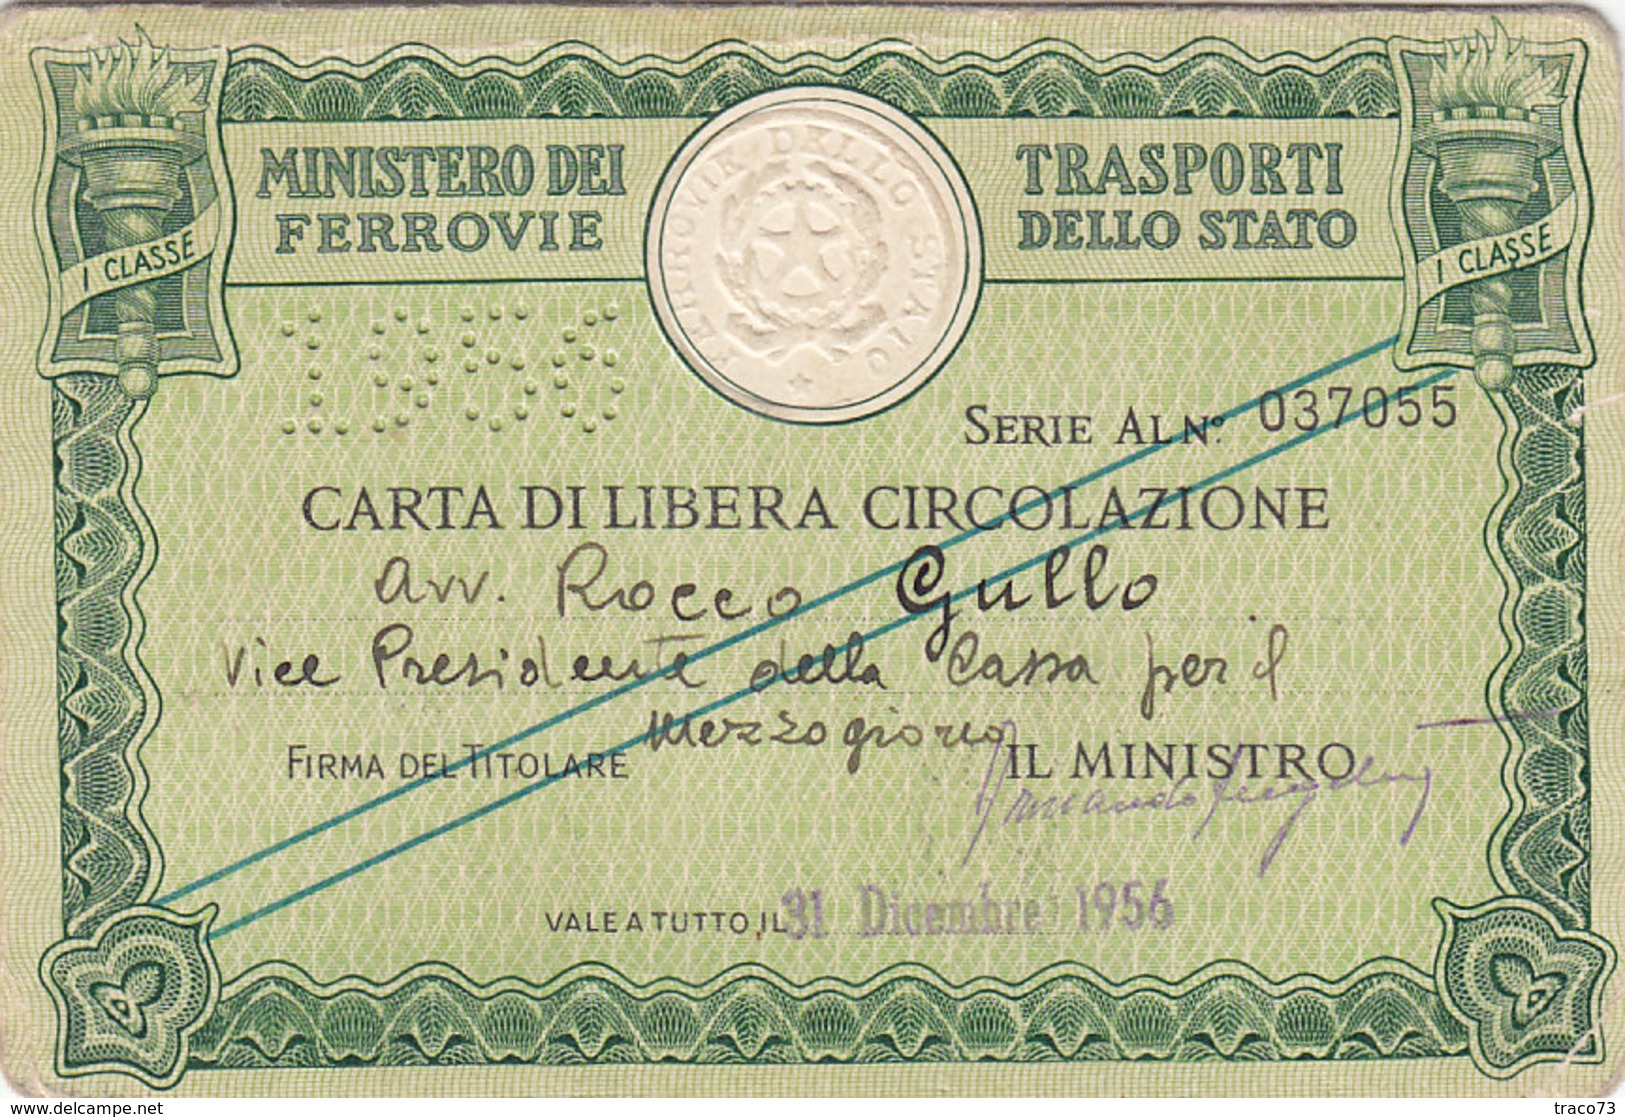 FERROVIE DELLO STATO / CARTA DI LIBERA CIRCOLAZIONE _ PERFIN 1956 - Europa